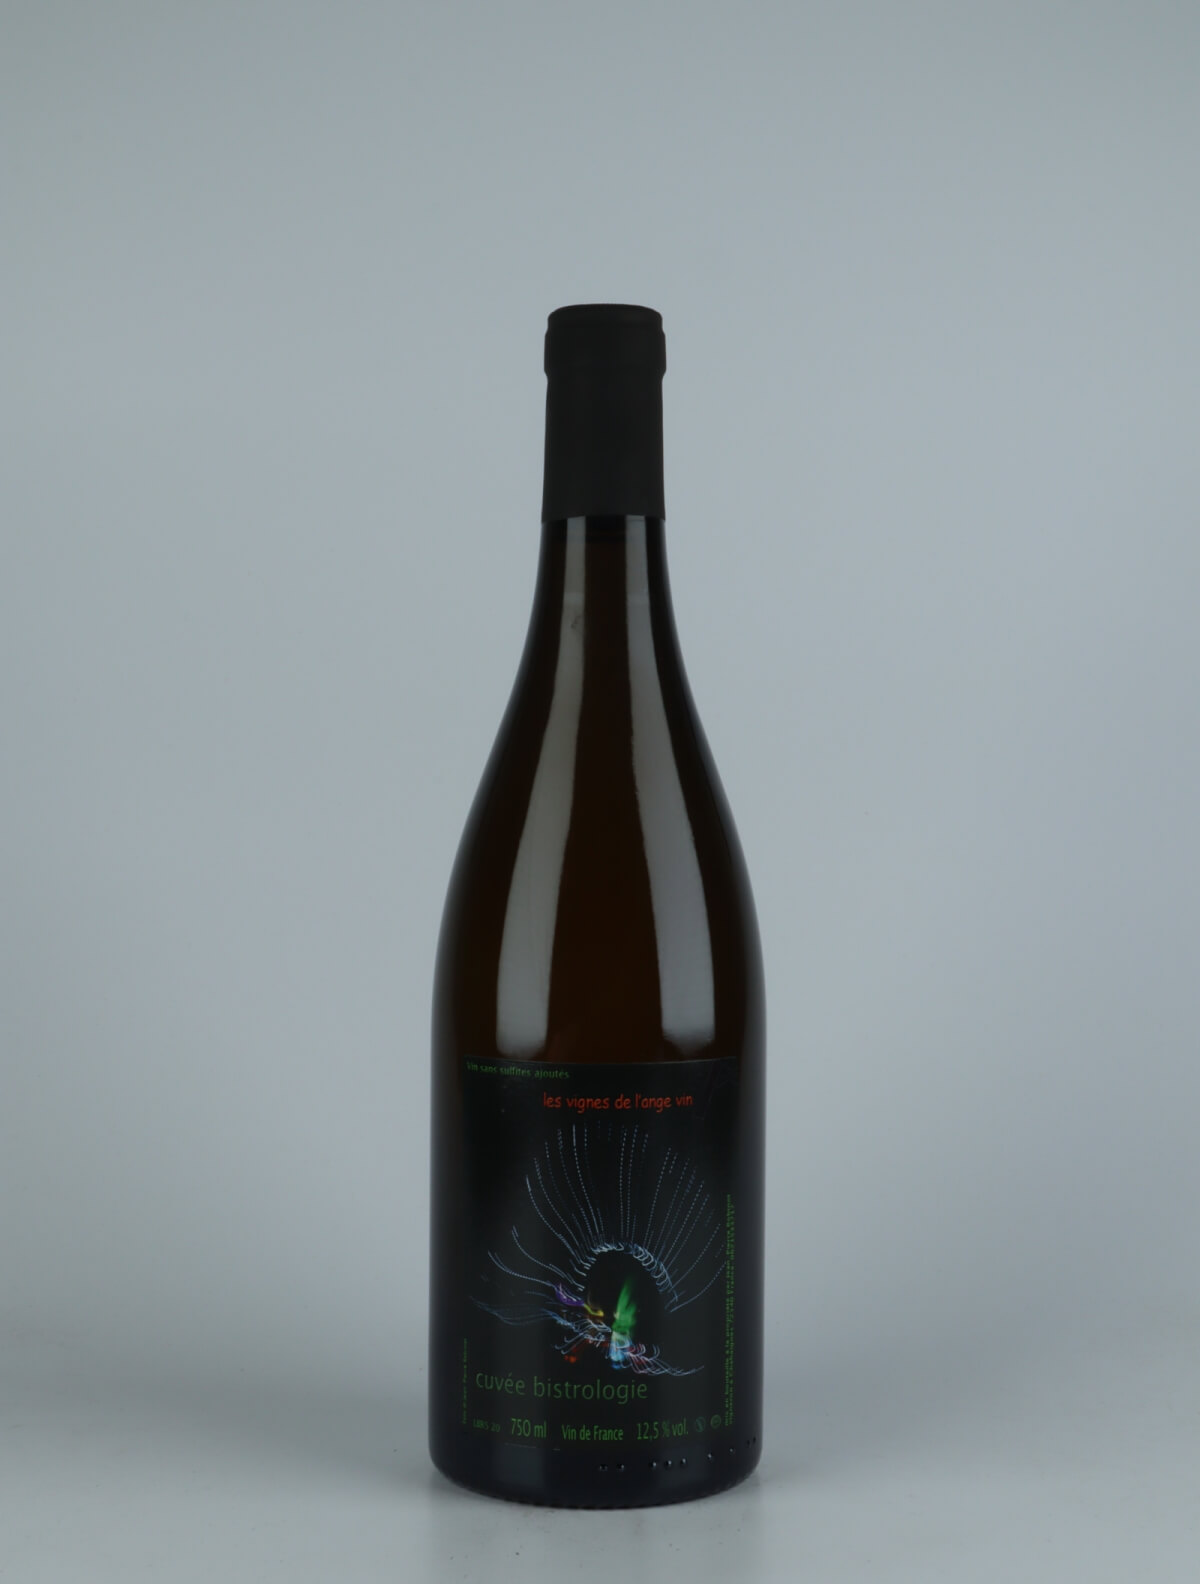 A bottle 2020 Bistrologie White wine from Jean-Pierre Robinot, Loire in France